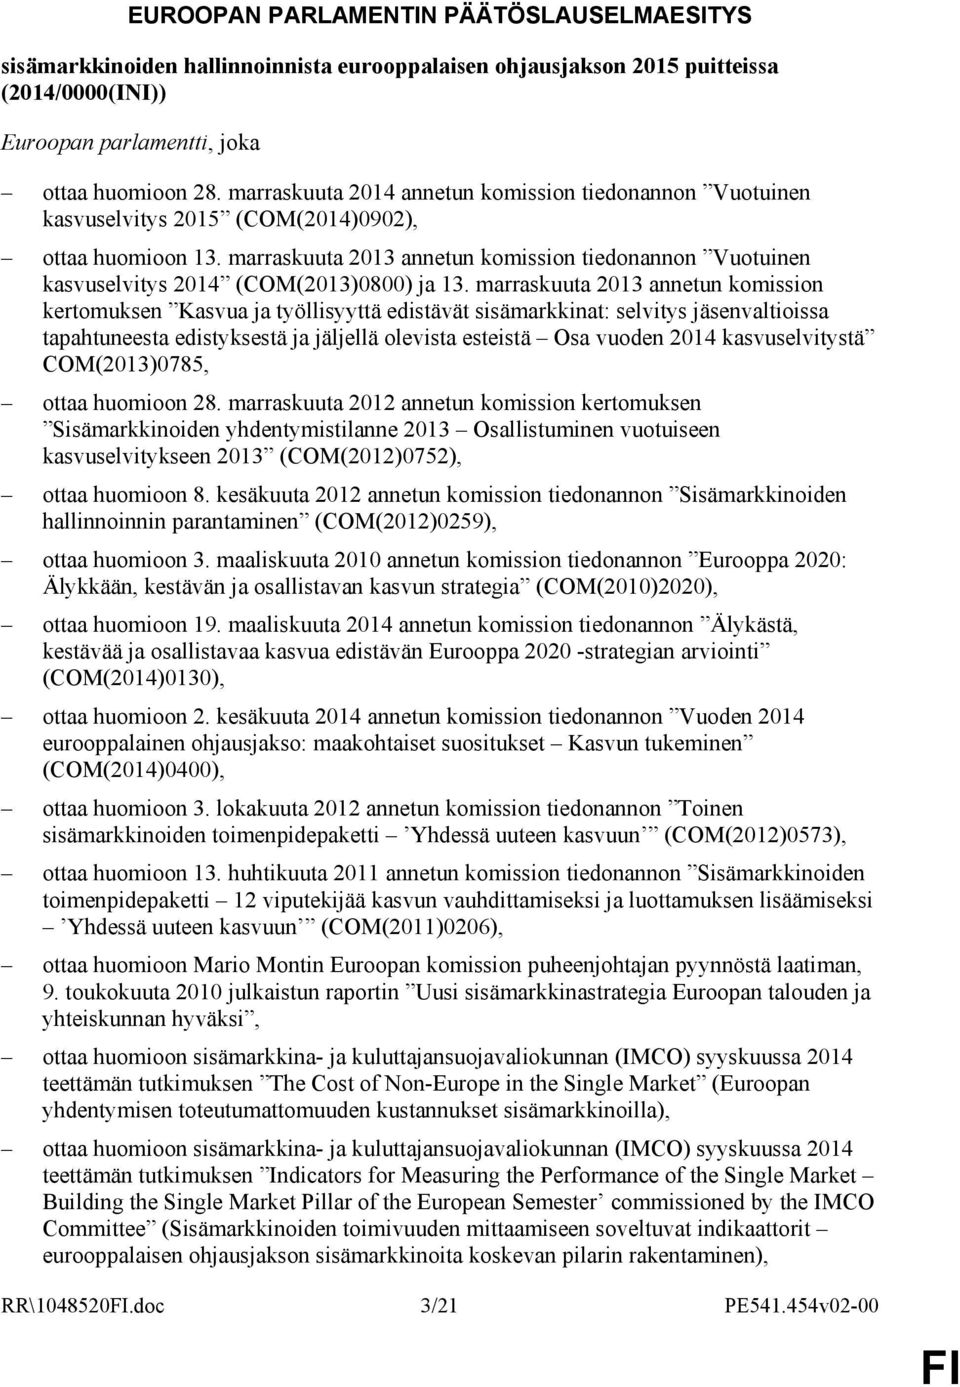 marraskuuta 2013 annetun komission tiedonannon Vuotuinen kasvuselvitys 2014 (COM(2013)0800) ja 13.